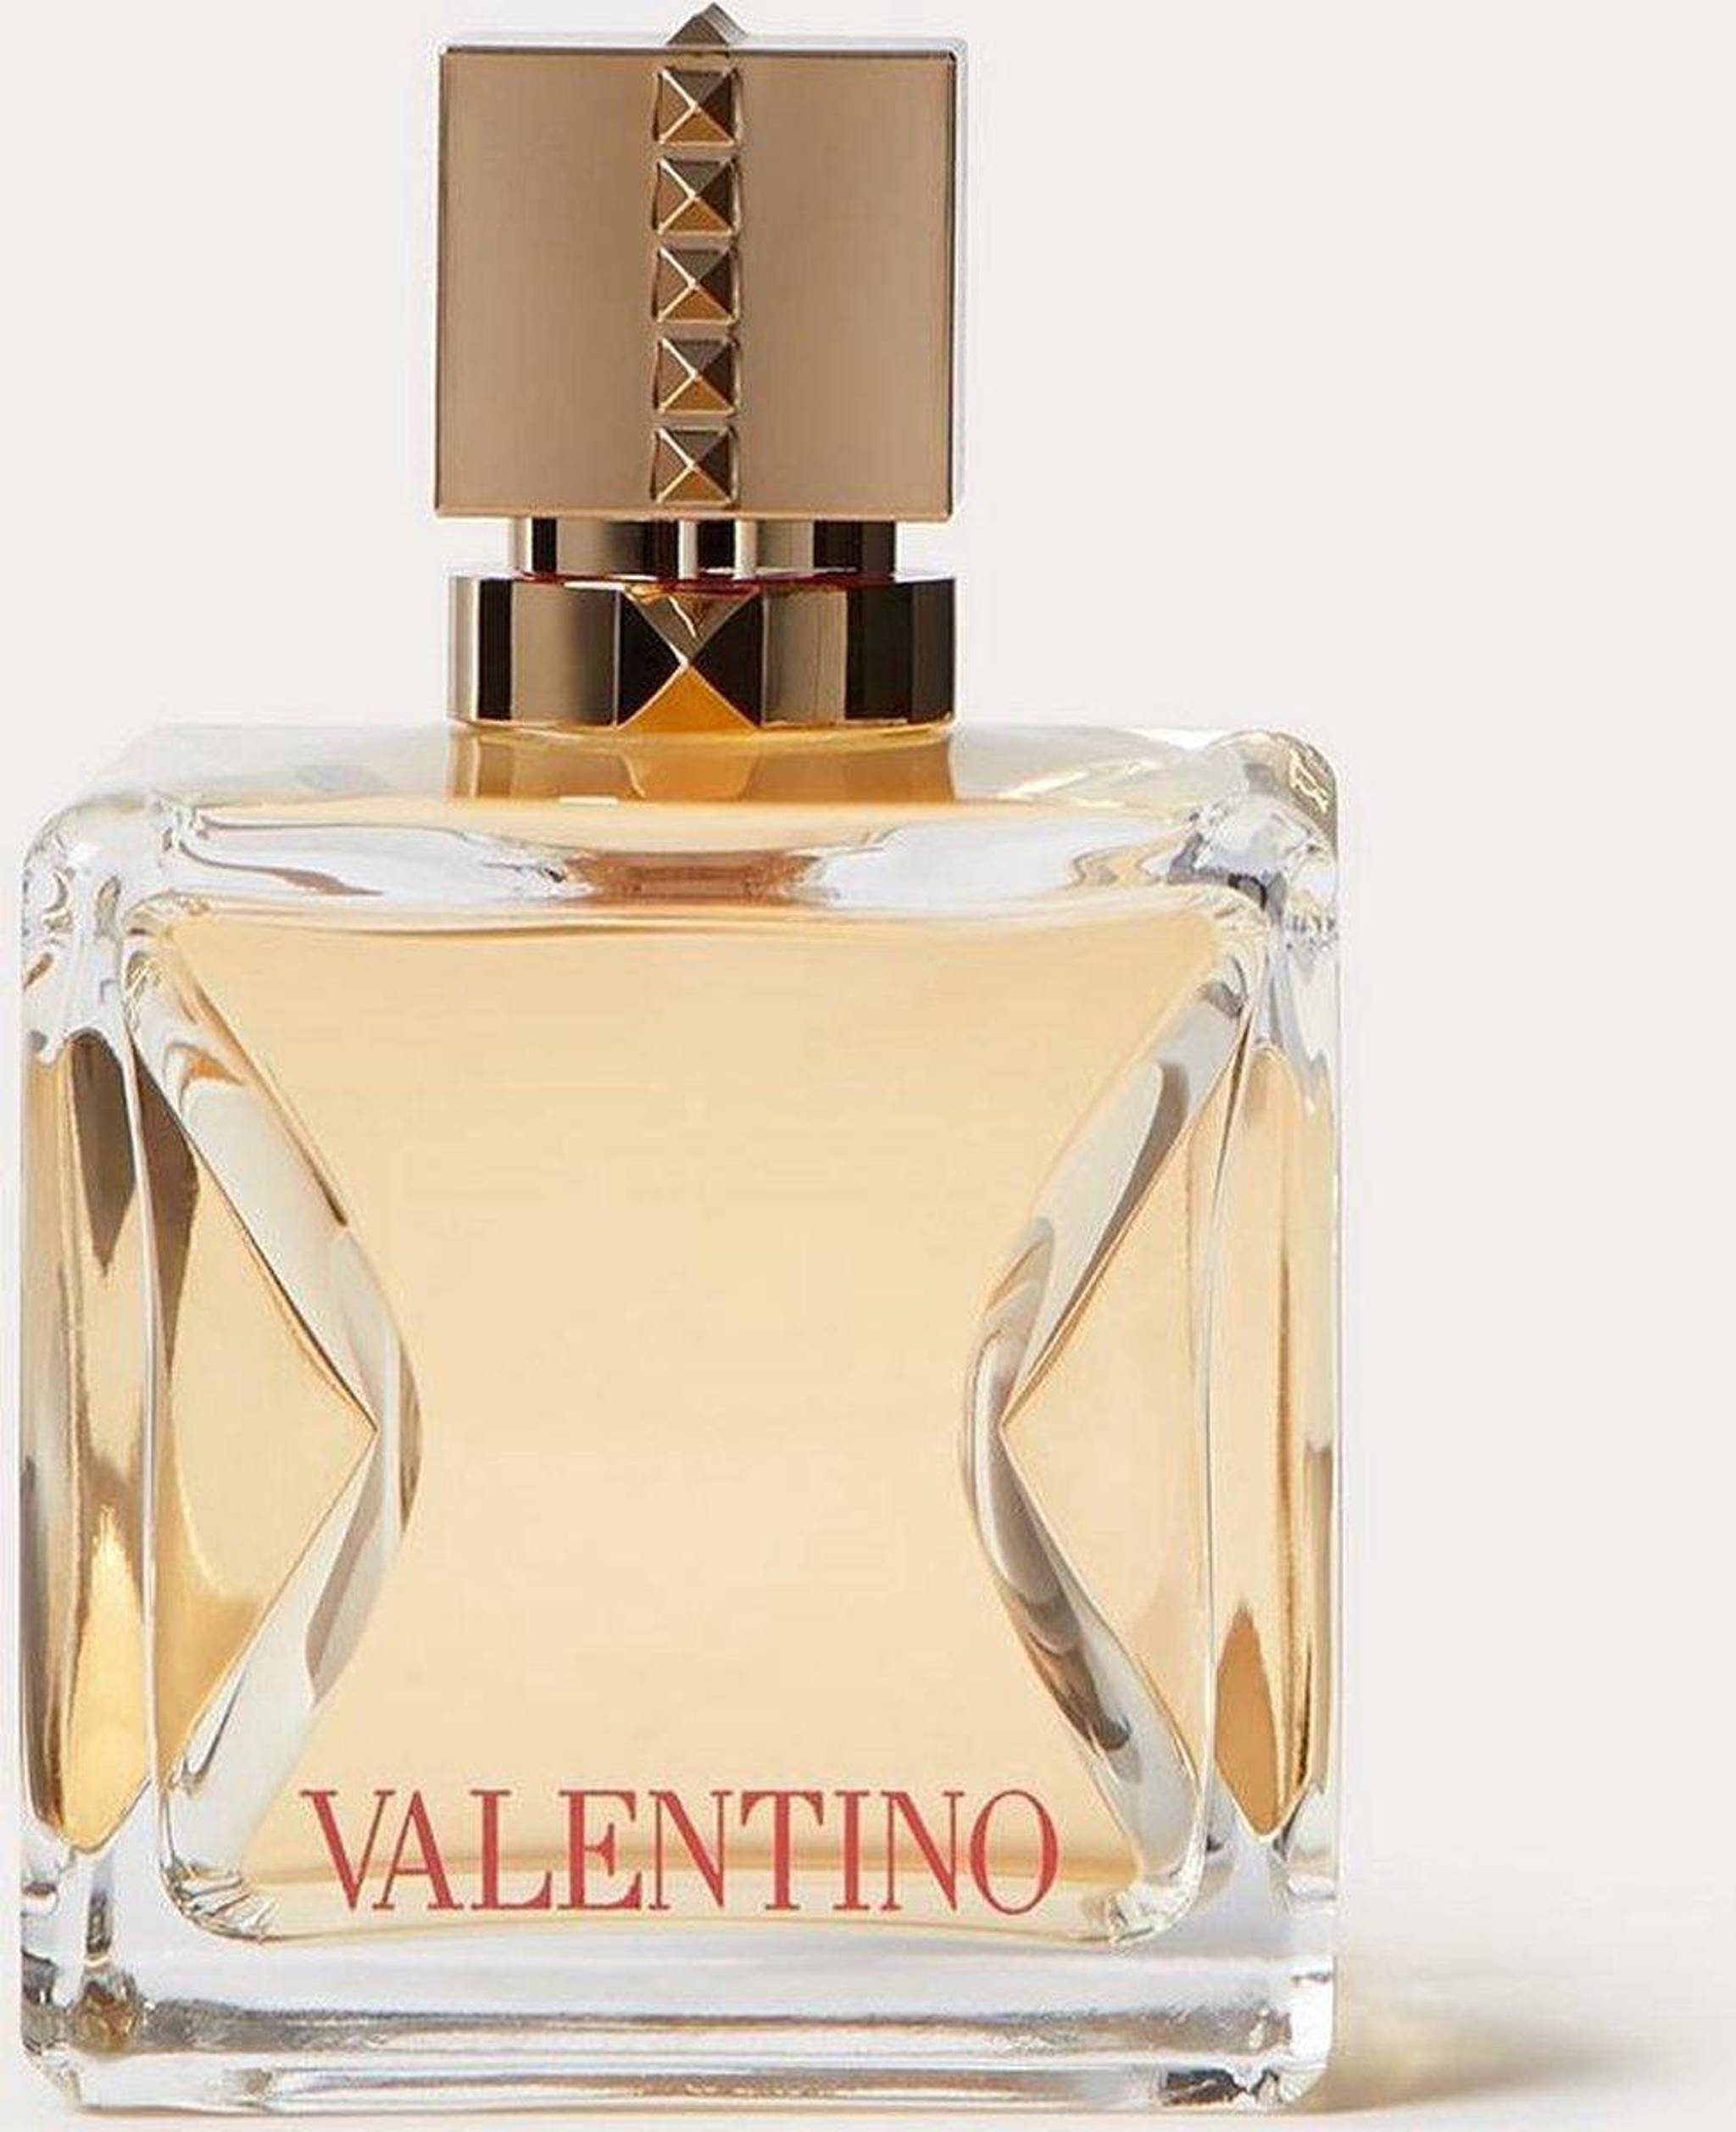 Valentino Voce Viva eau parfum - 100 ml wehkamp